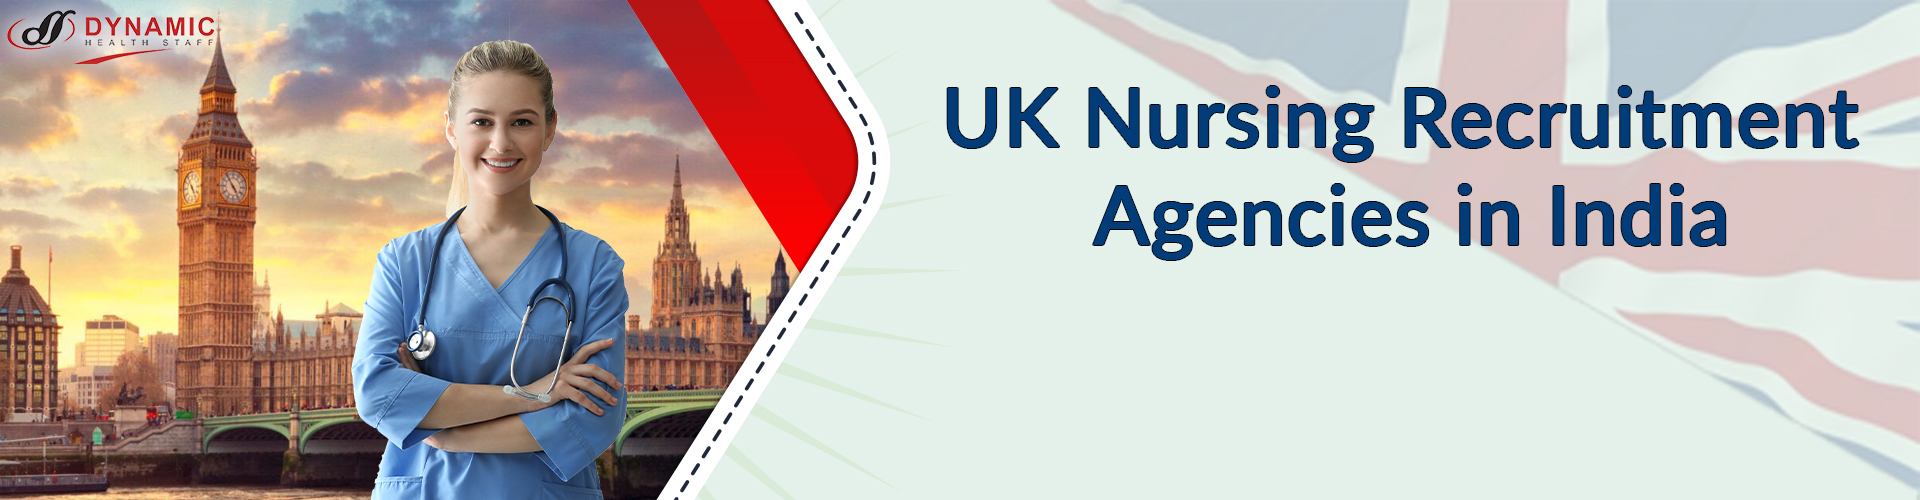 UK Nursing Recruitment Agencies in India